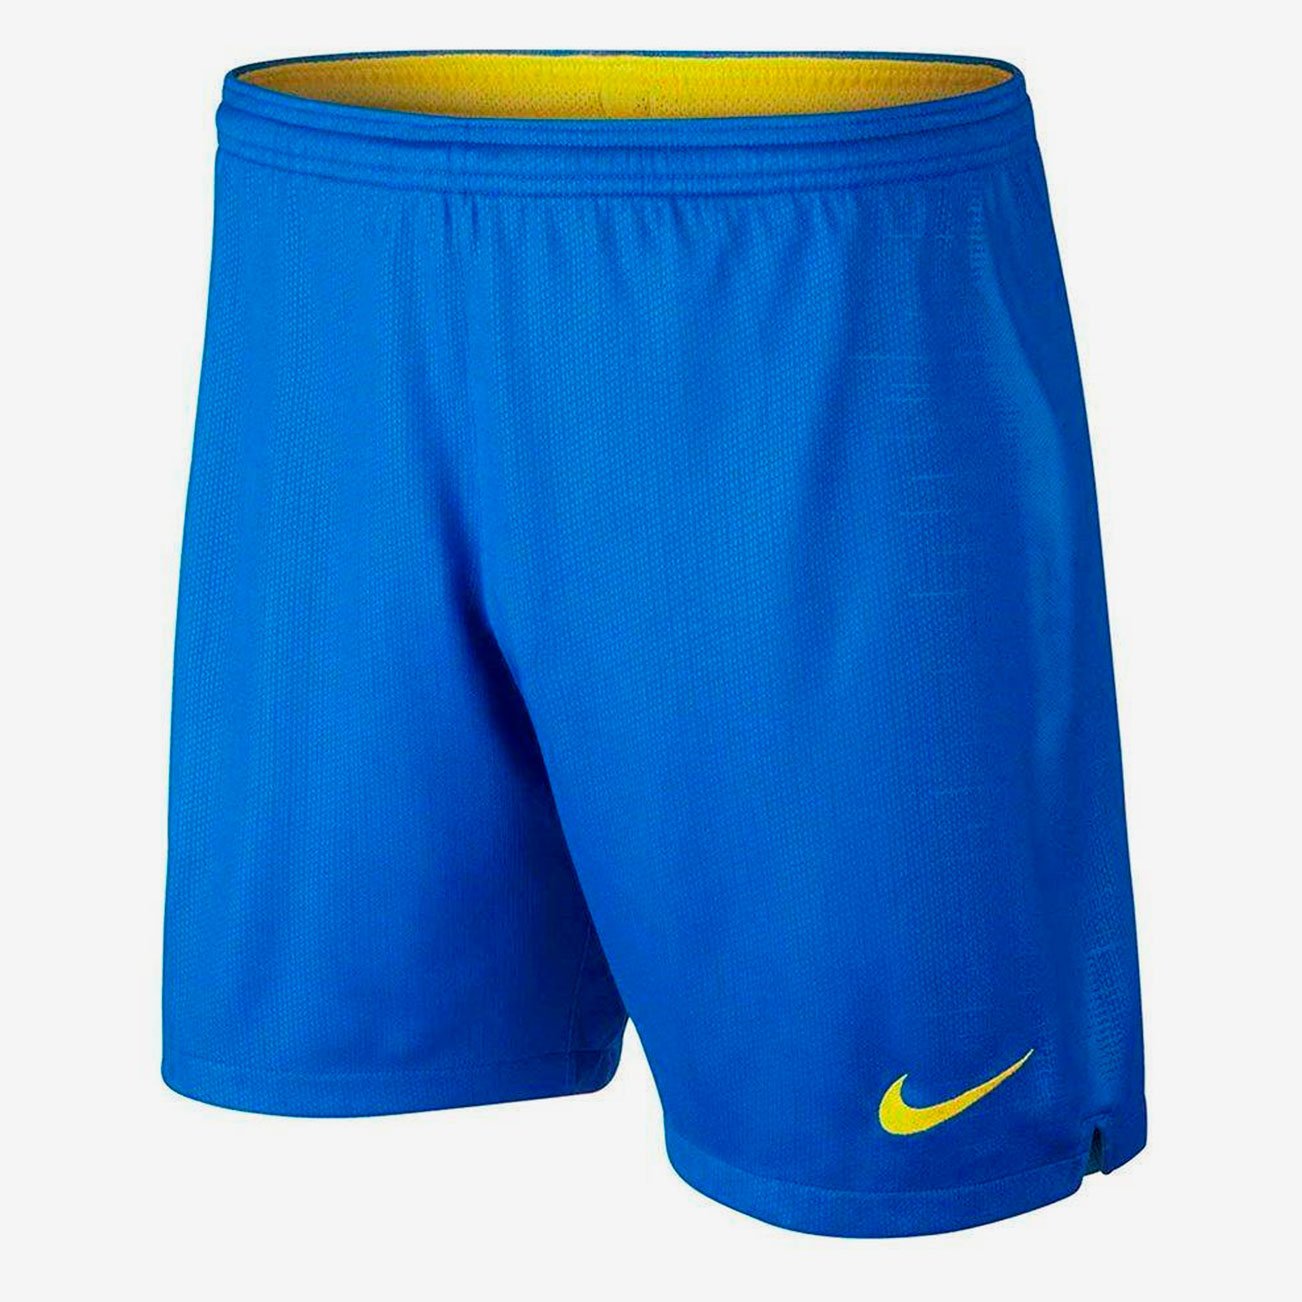 Домашние игровые шорты Nike сборной Бразилии